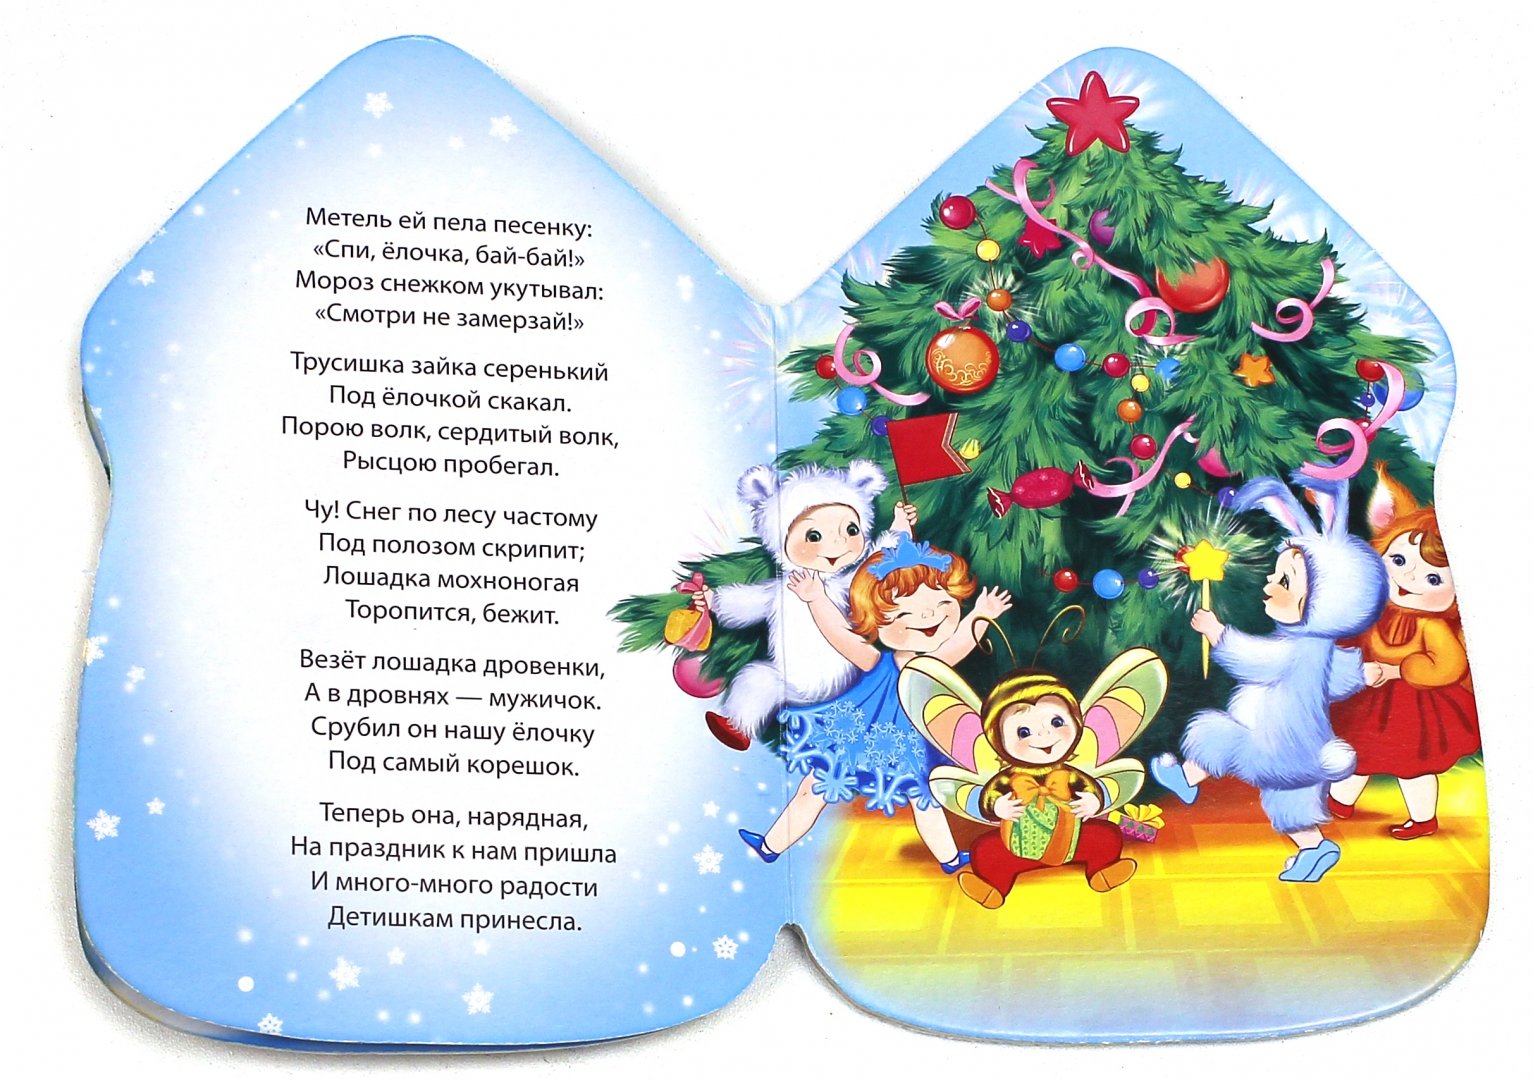 Новогоднюю песню новый год. Новогодние песенки. Детские новогодние песенки. Новогодние песенки для детей. Тексты детских новогодних песенок для малышей.